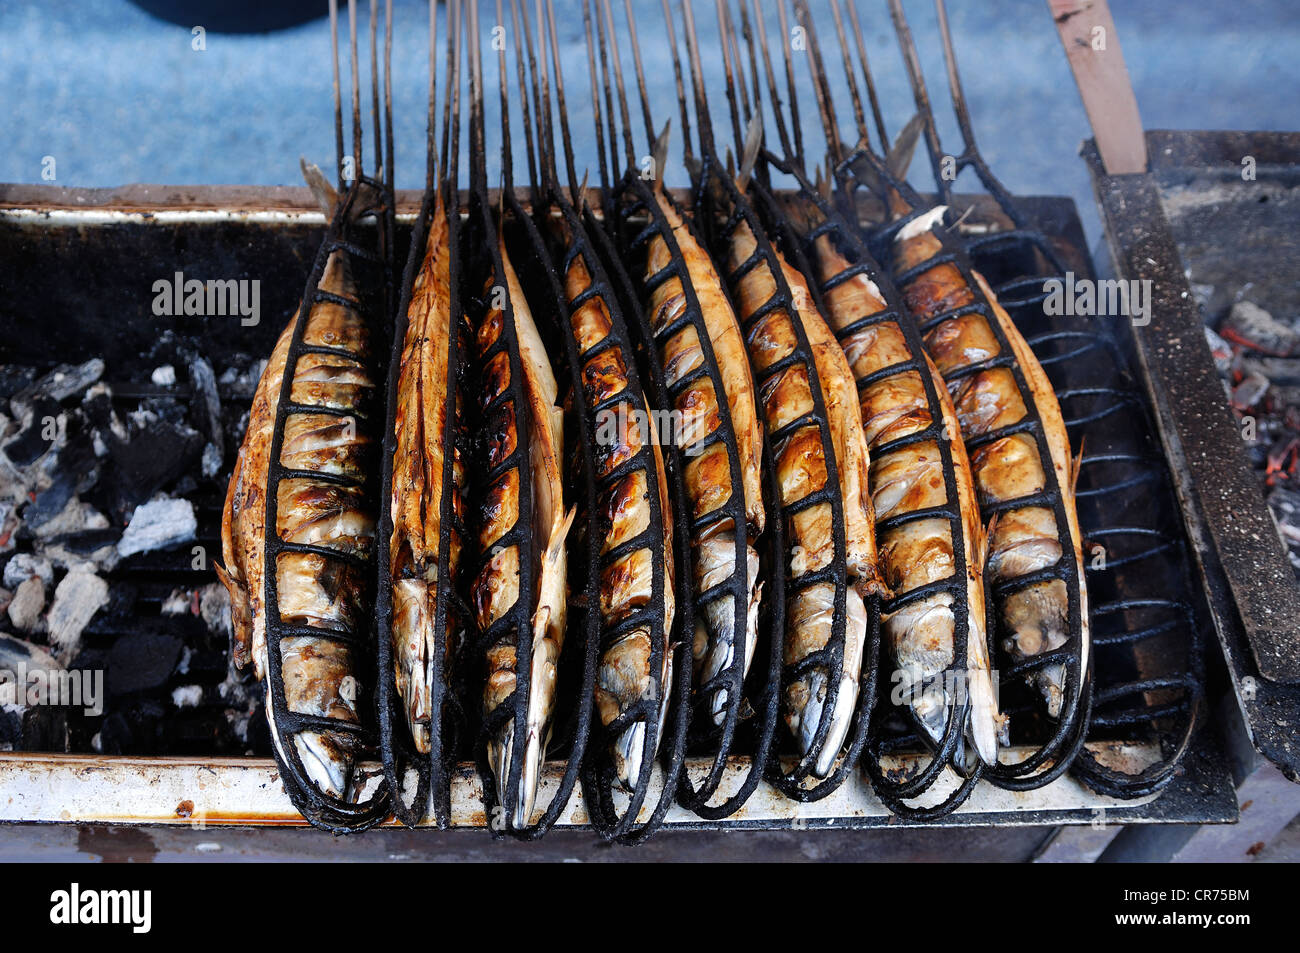 Steckerlfisch, Makrele auf dem Grill, München, Bayern, Deutschland, Europa  Stockfotografie - Alamy